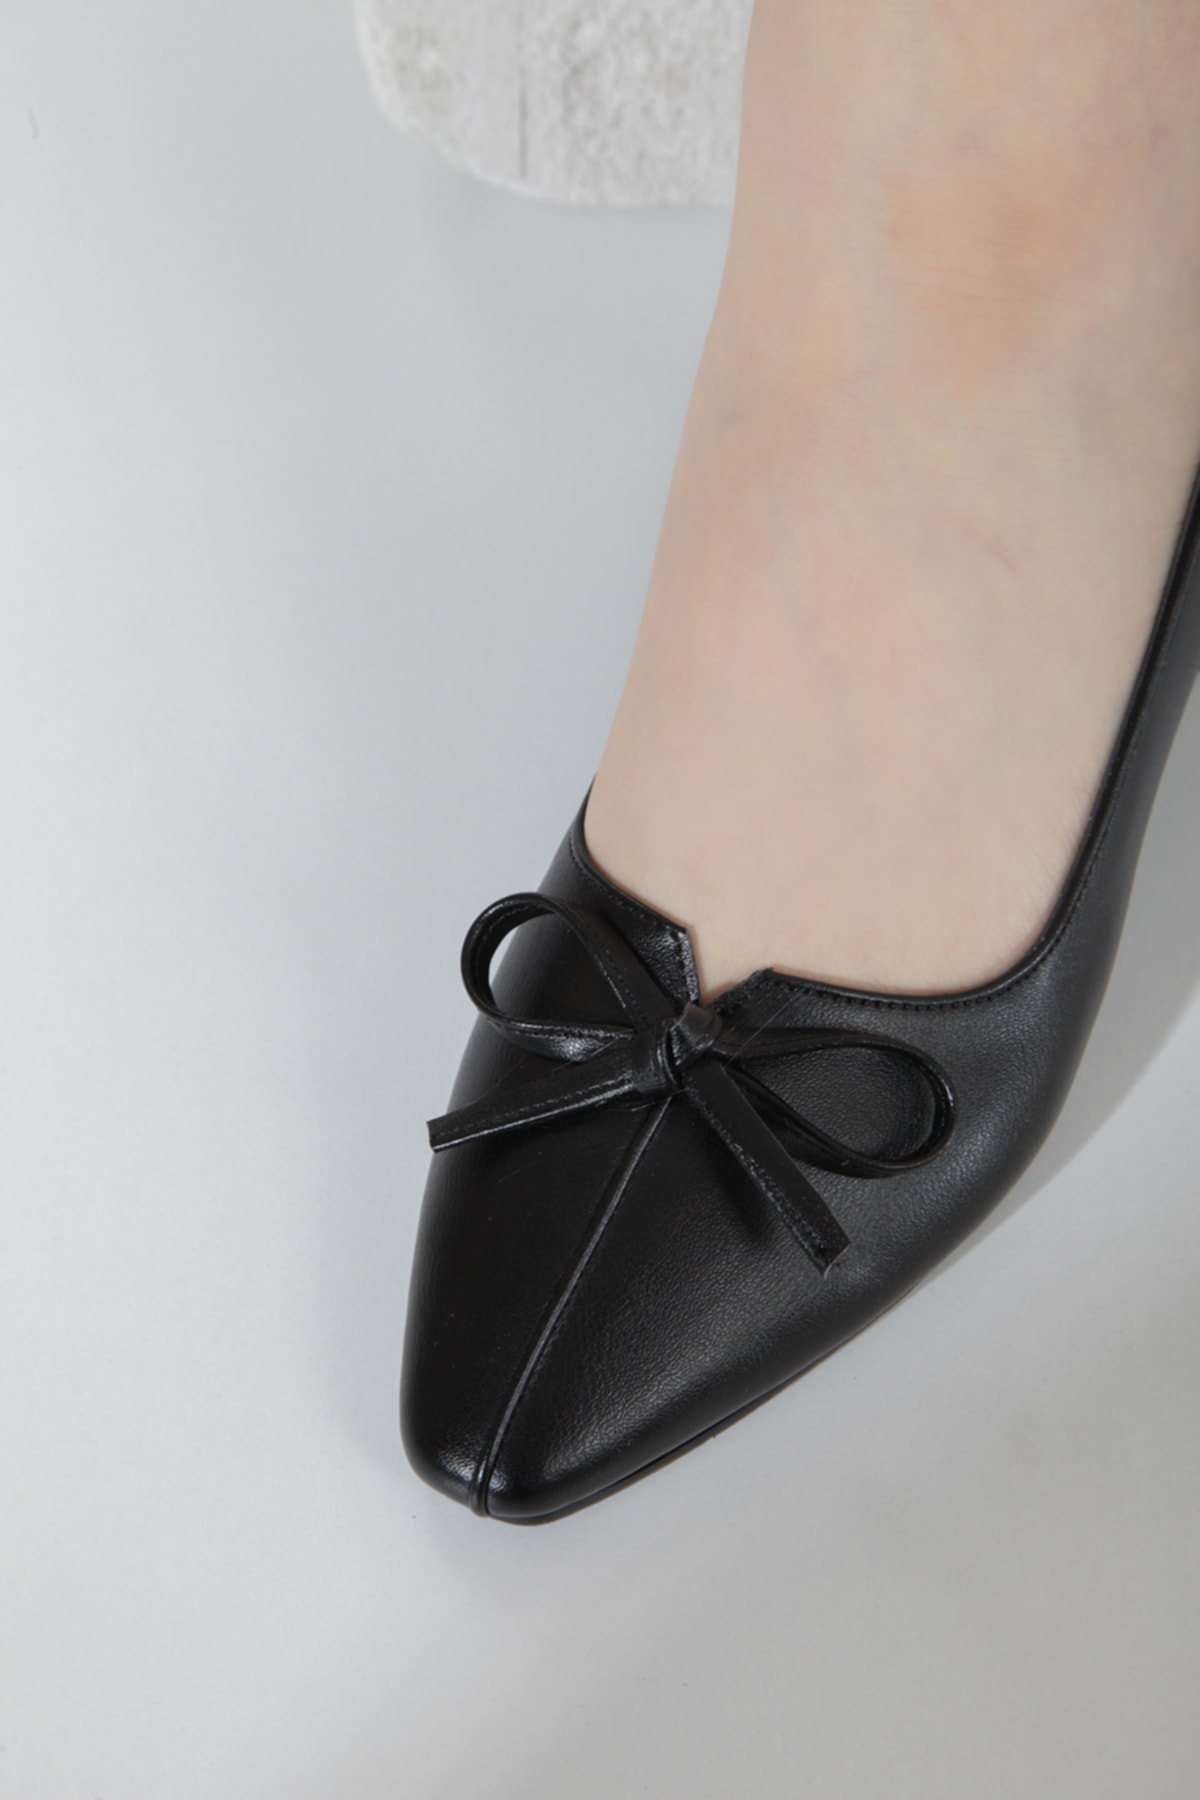 FORS SHOES Siyah Cilt Fiyonk Detaylı Kadın Topuklu Ayakkabı 4 cm ZO8859